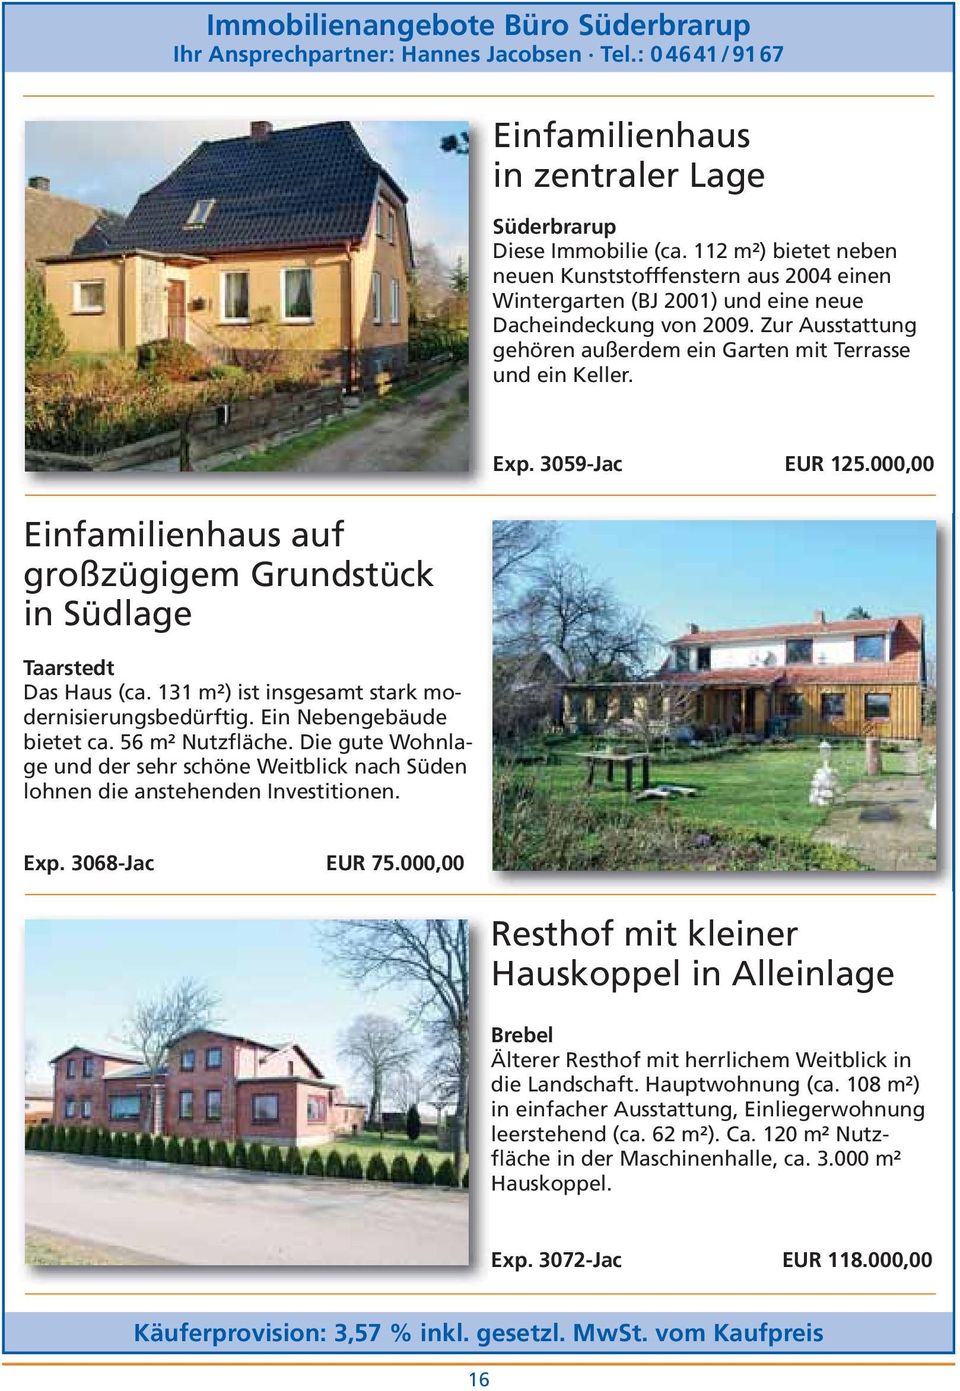 Einfamilienhaus auf großzügigem Grundstück in Südlage Taarstedt Das Haus (ca. 131 m²) ist insgesamt stark modernisierungsbedürftig. Ein Nebengebäude bietet ca. 56 m² Nutzfläche.